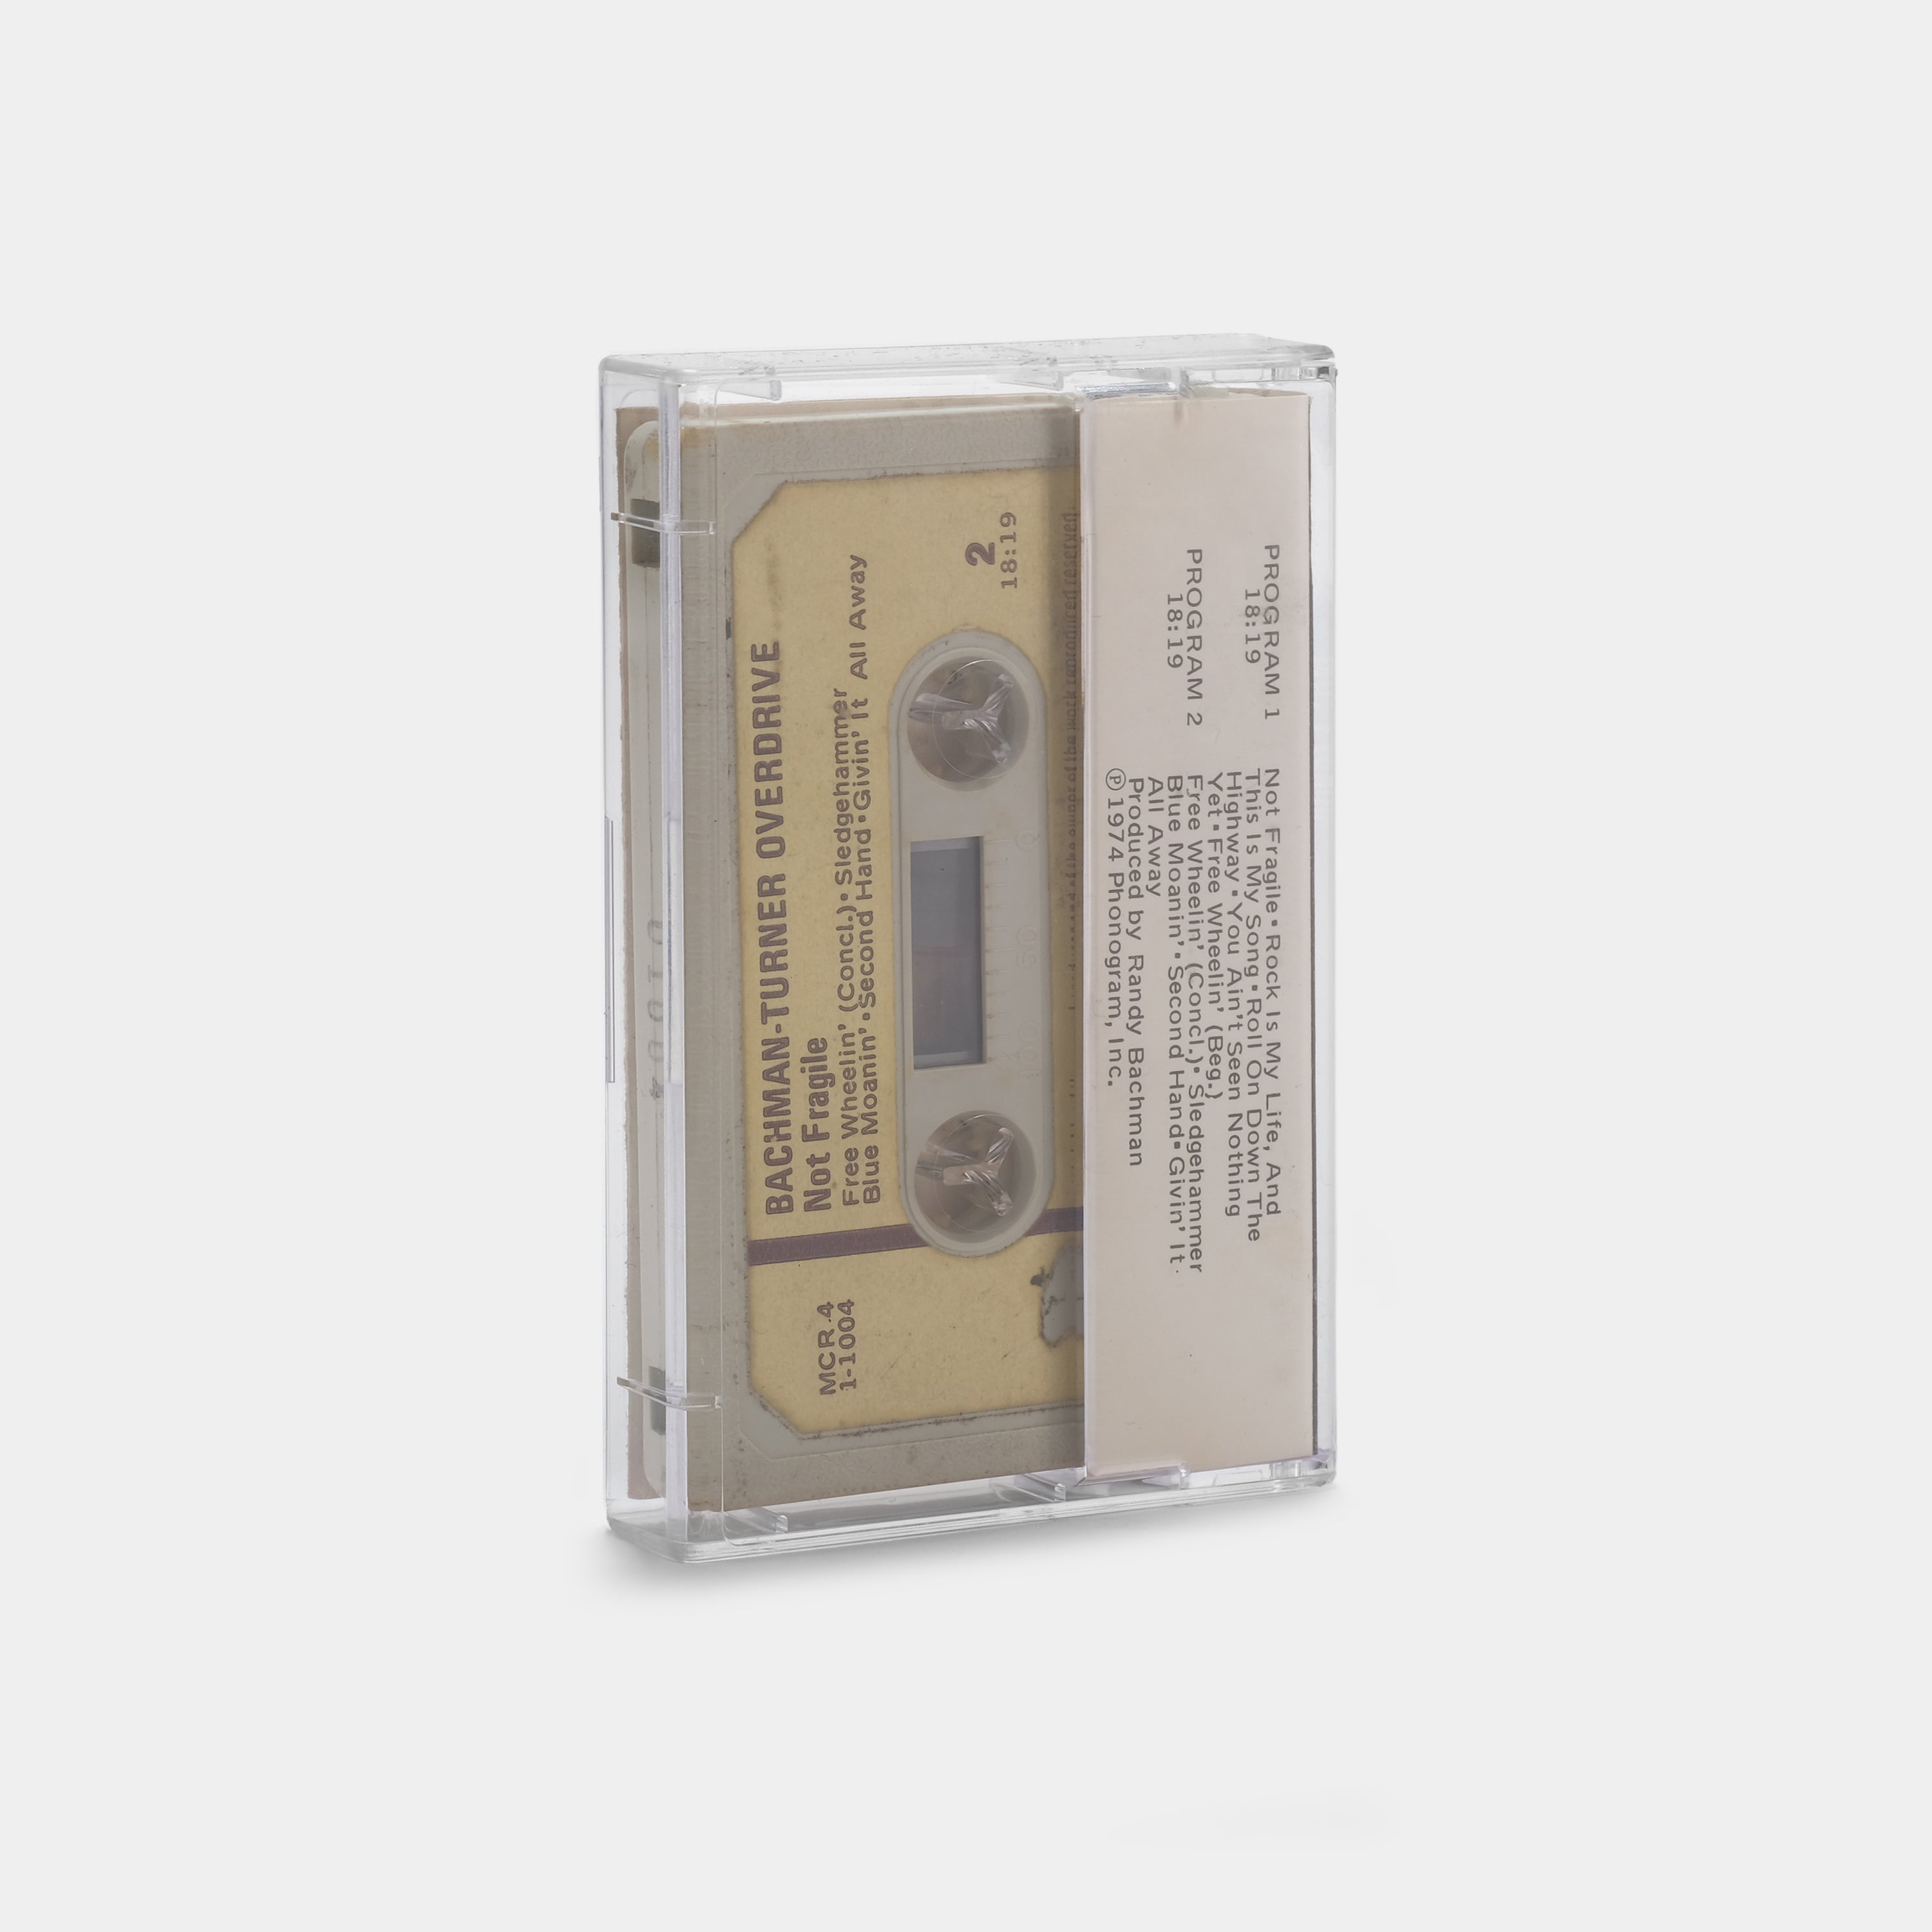 Bachman-Turner Overdrive - Not Fragile Cassette Tape